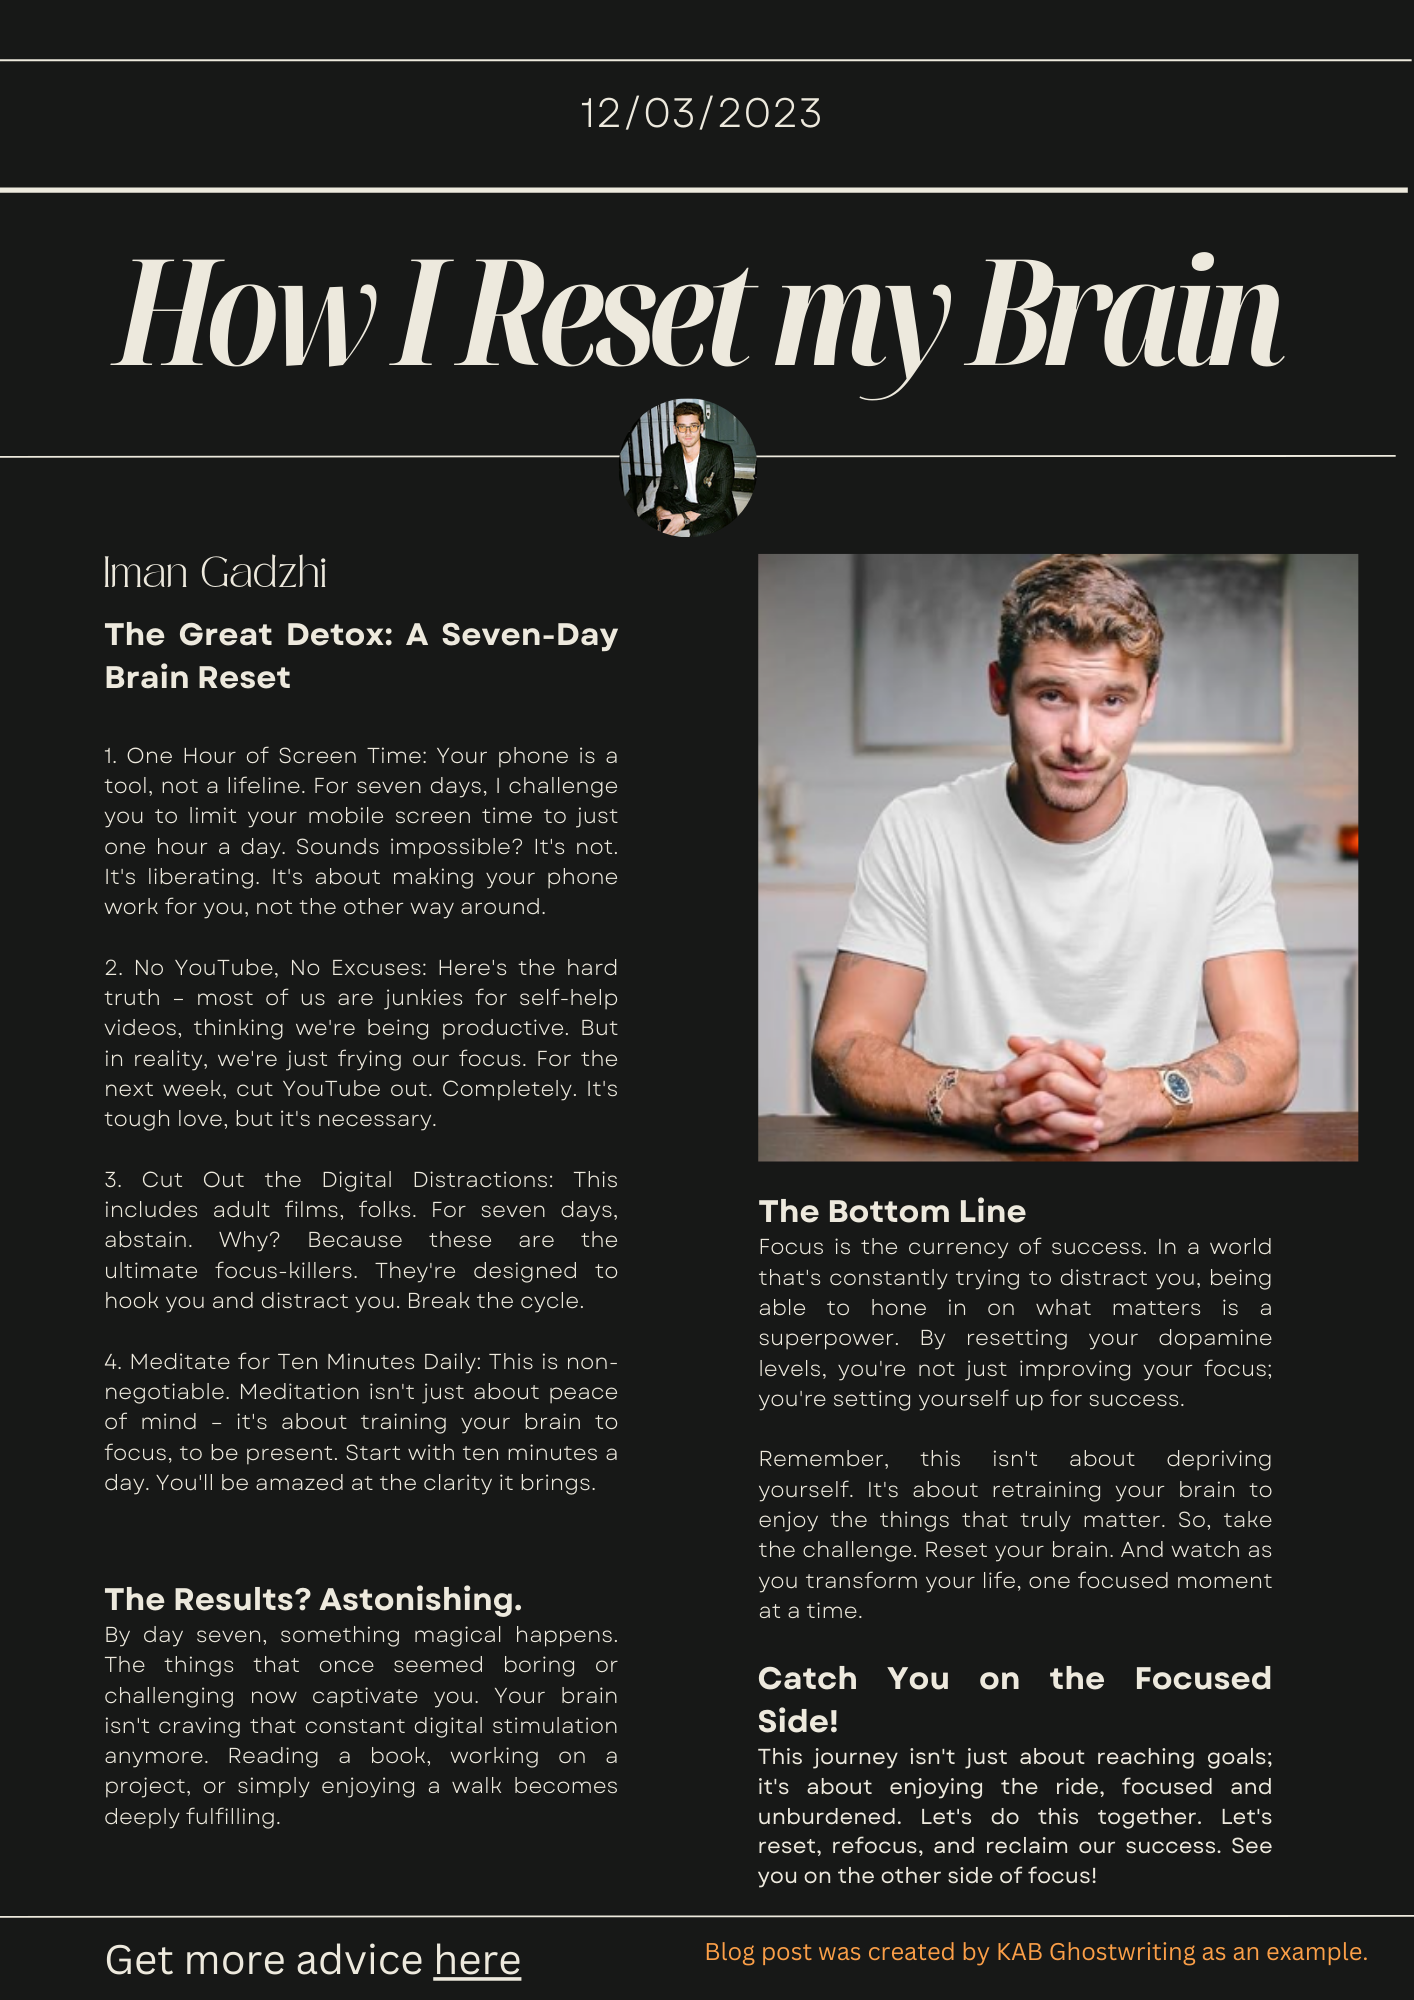 Iman Gadzhi's "How I Reset My Brain"